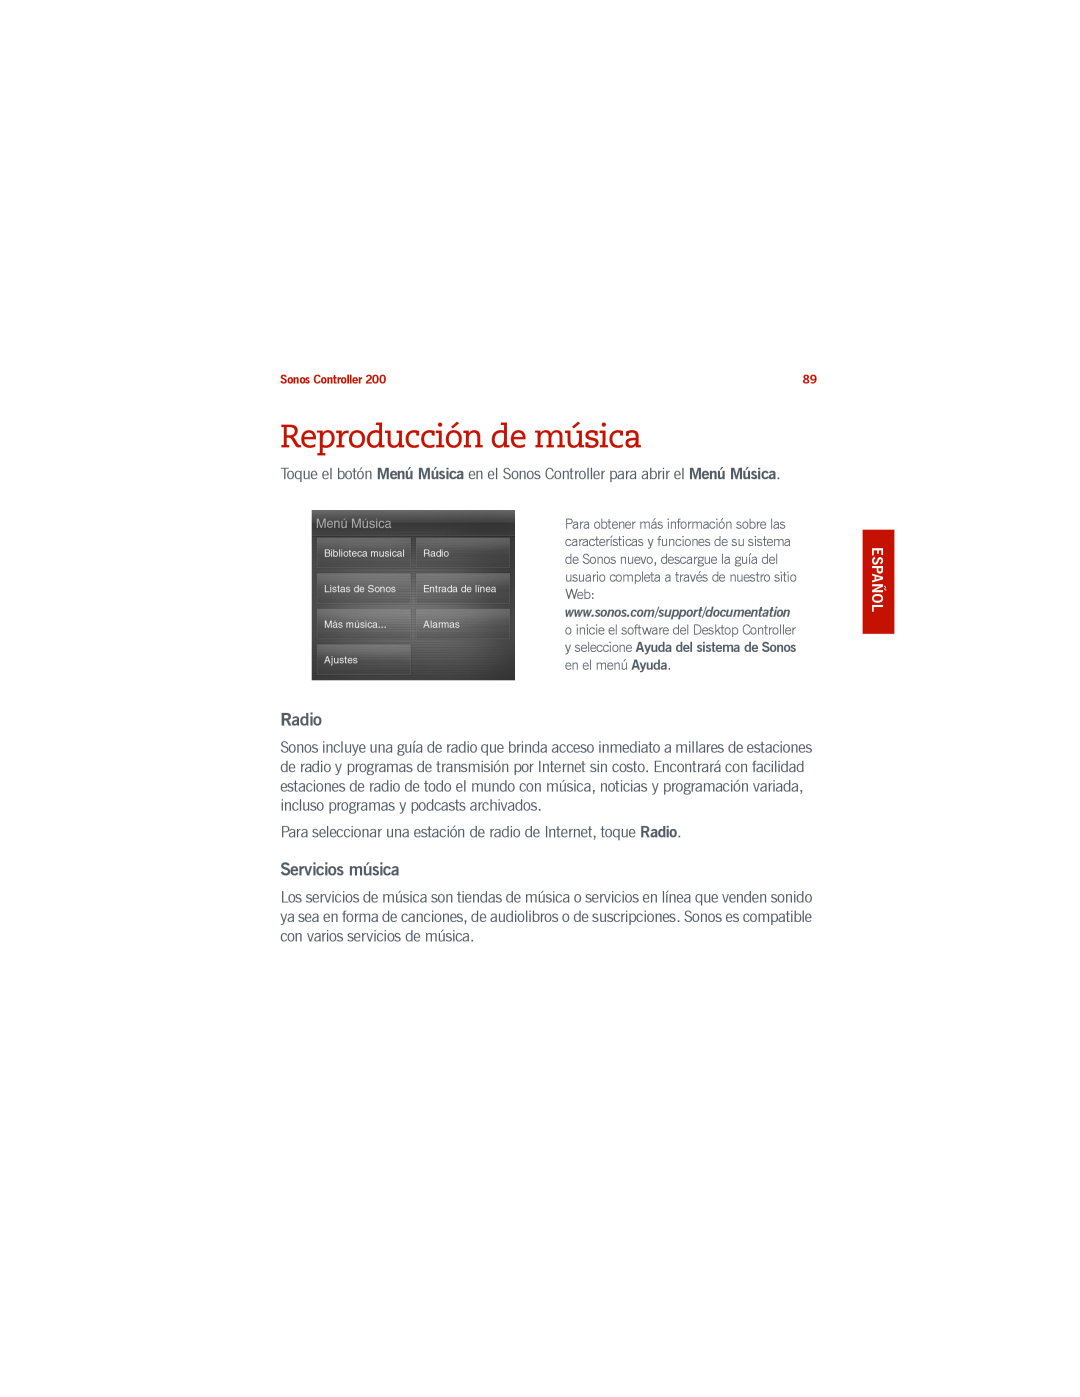 Sonos 200 manual Reproducción de música, Radio, Servicios música 